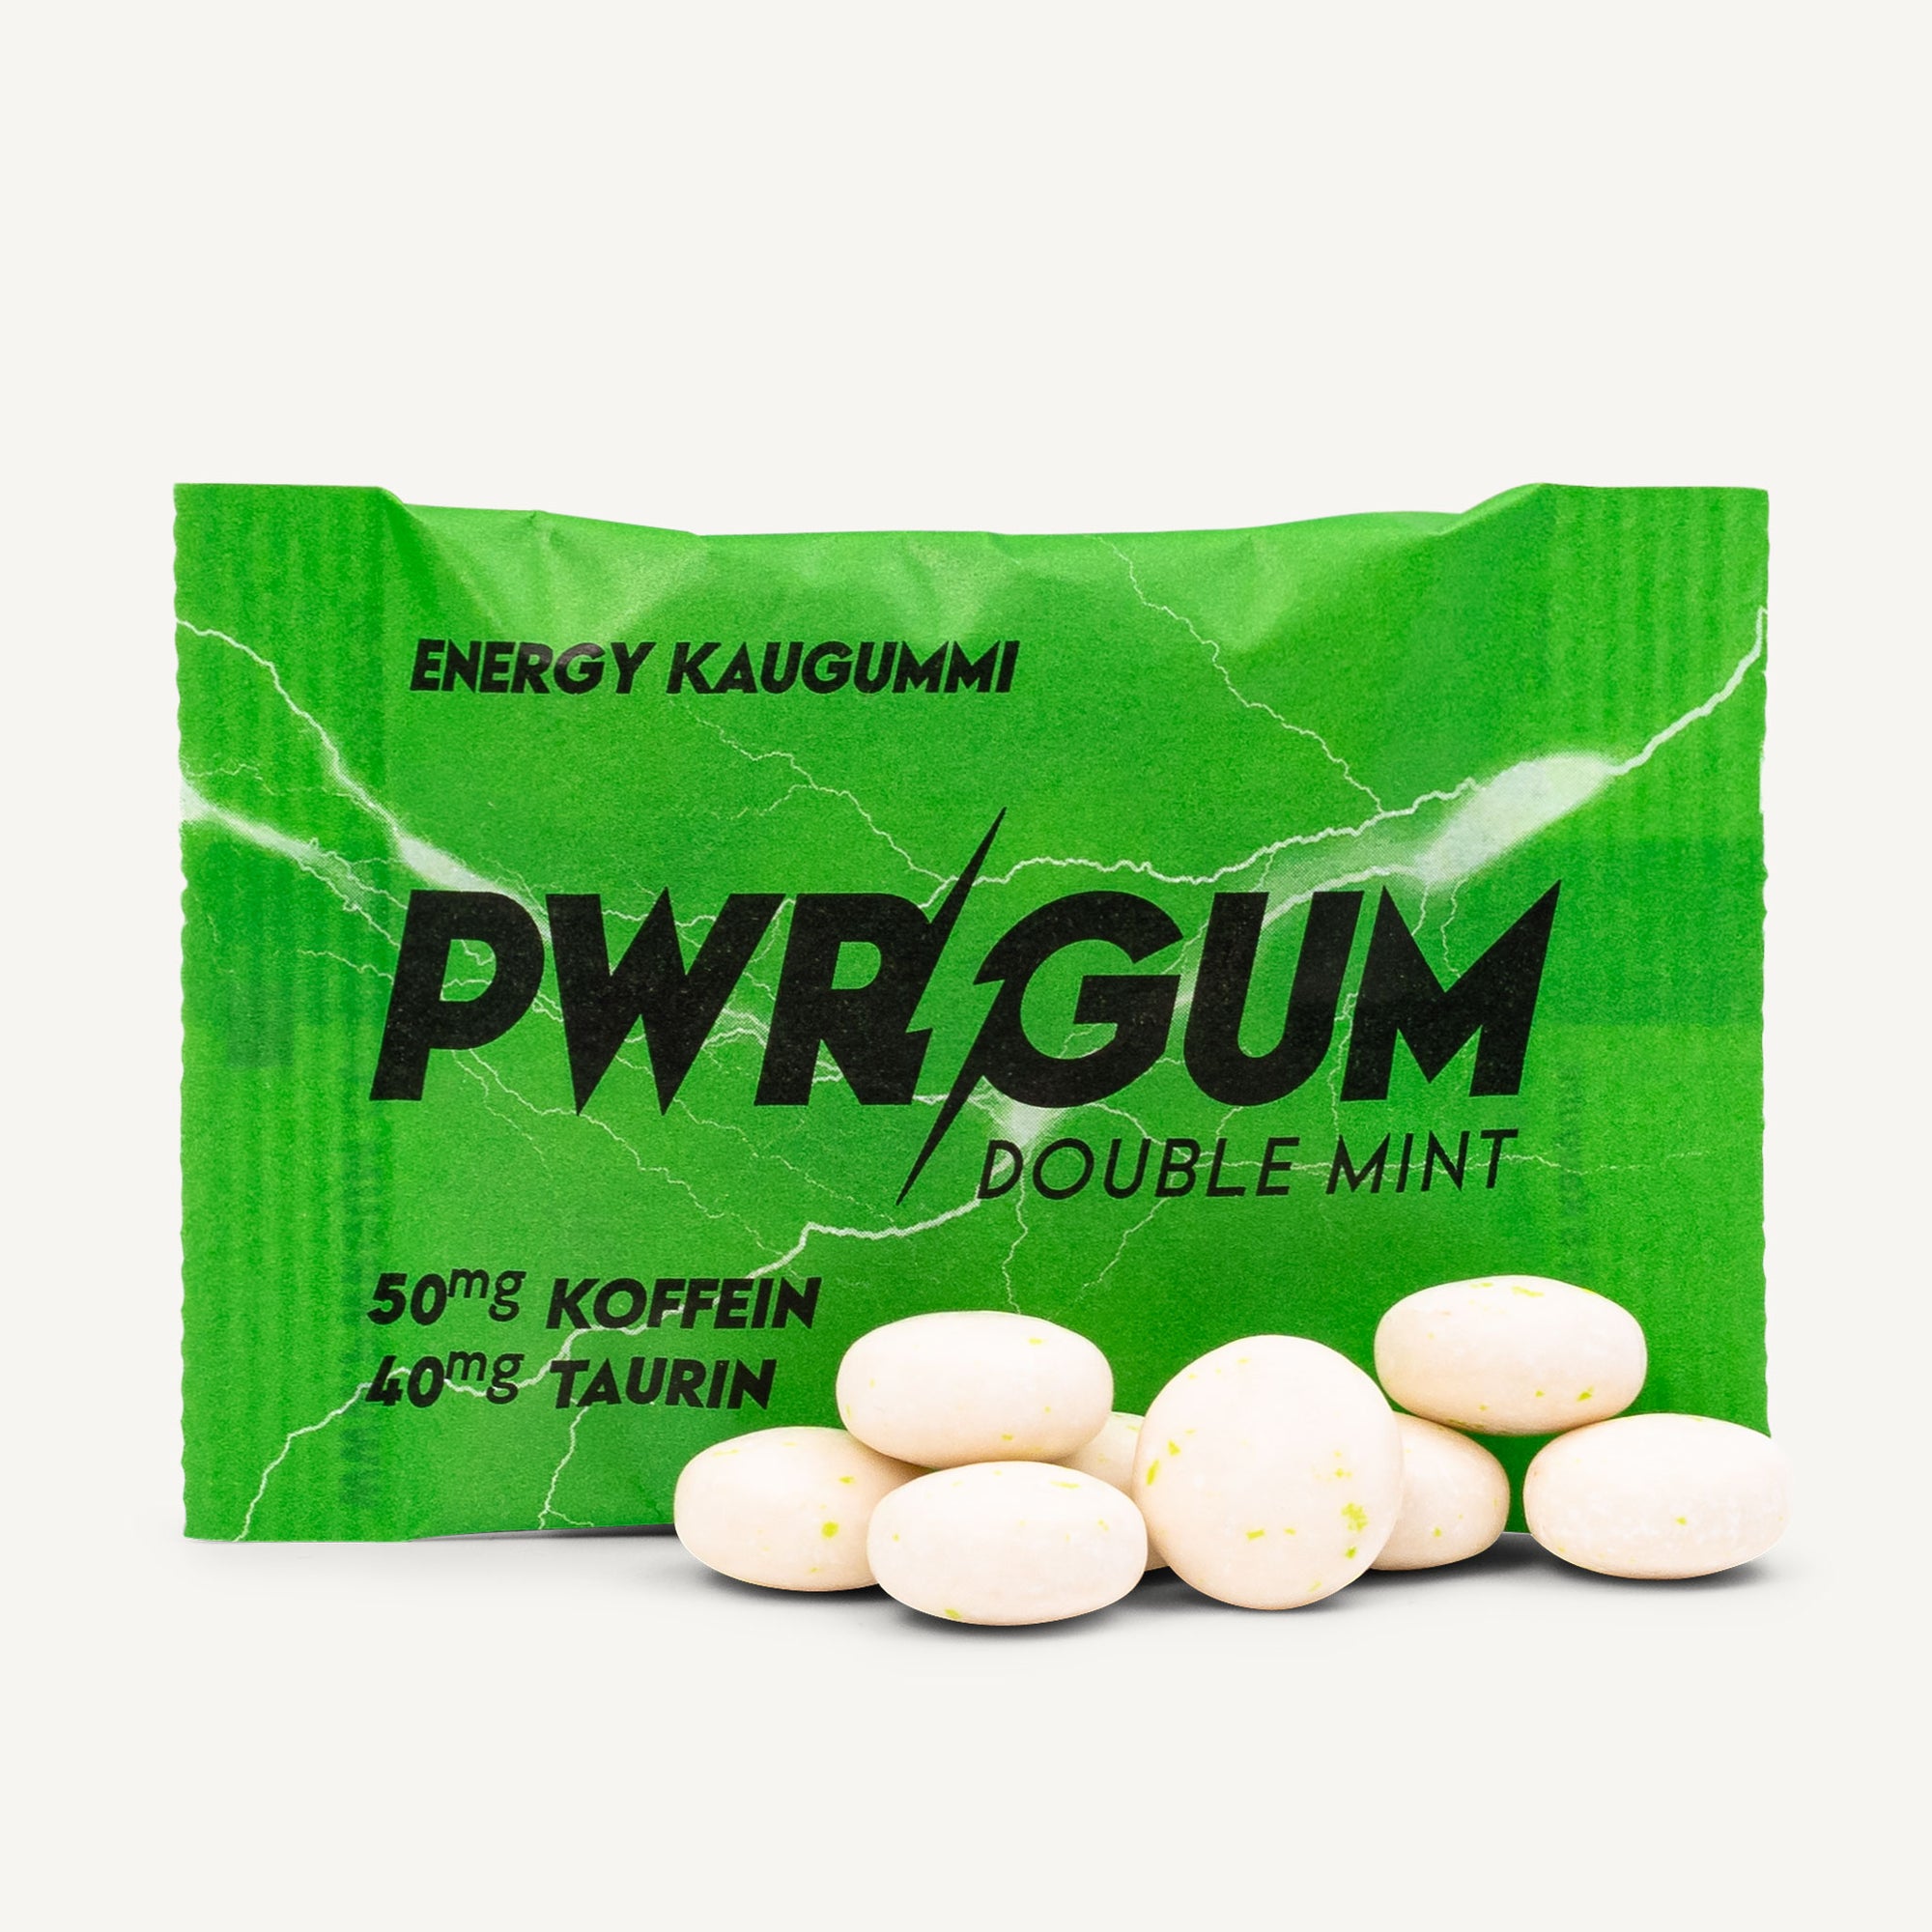 PWRGUM - Double Mint